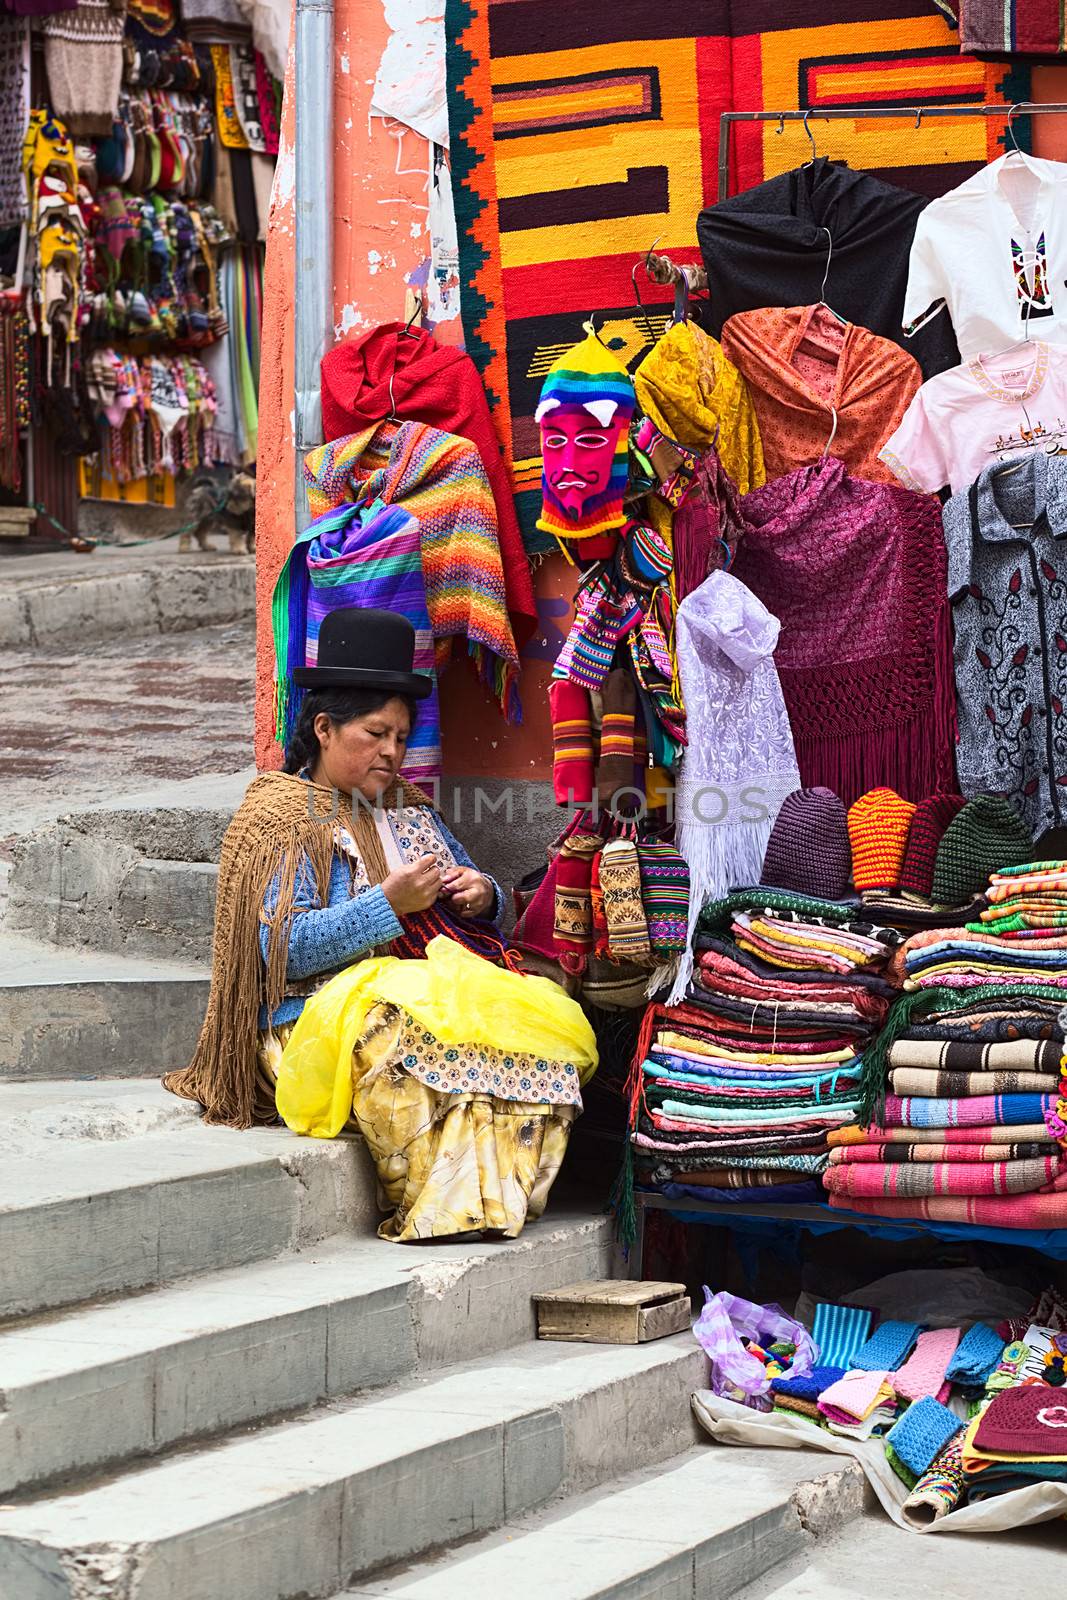 Street Vender in La Paz, Bolivia by sven